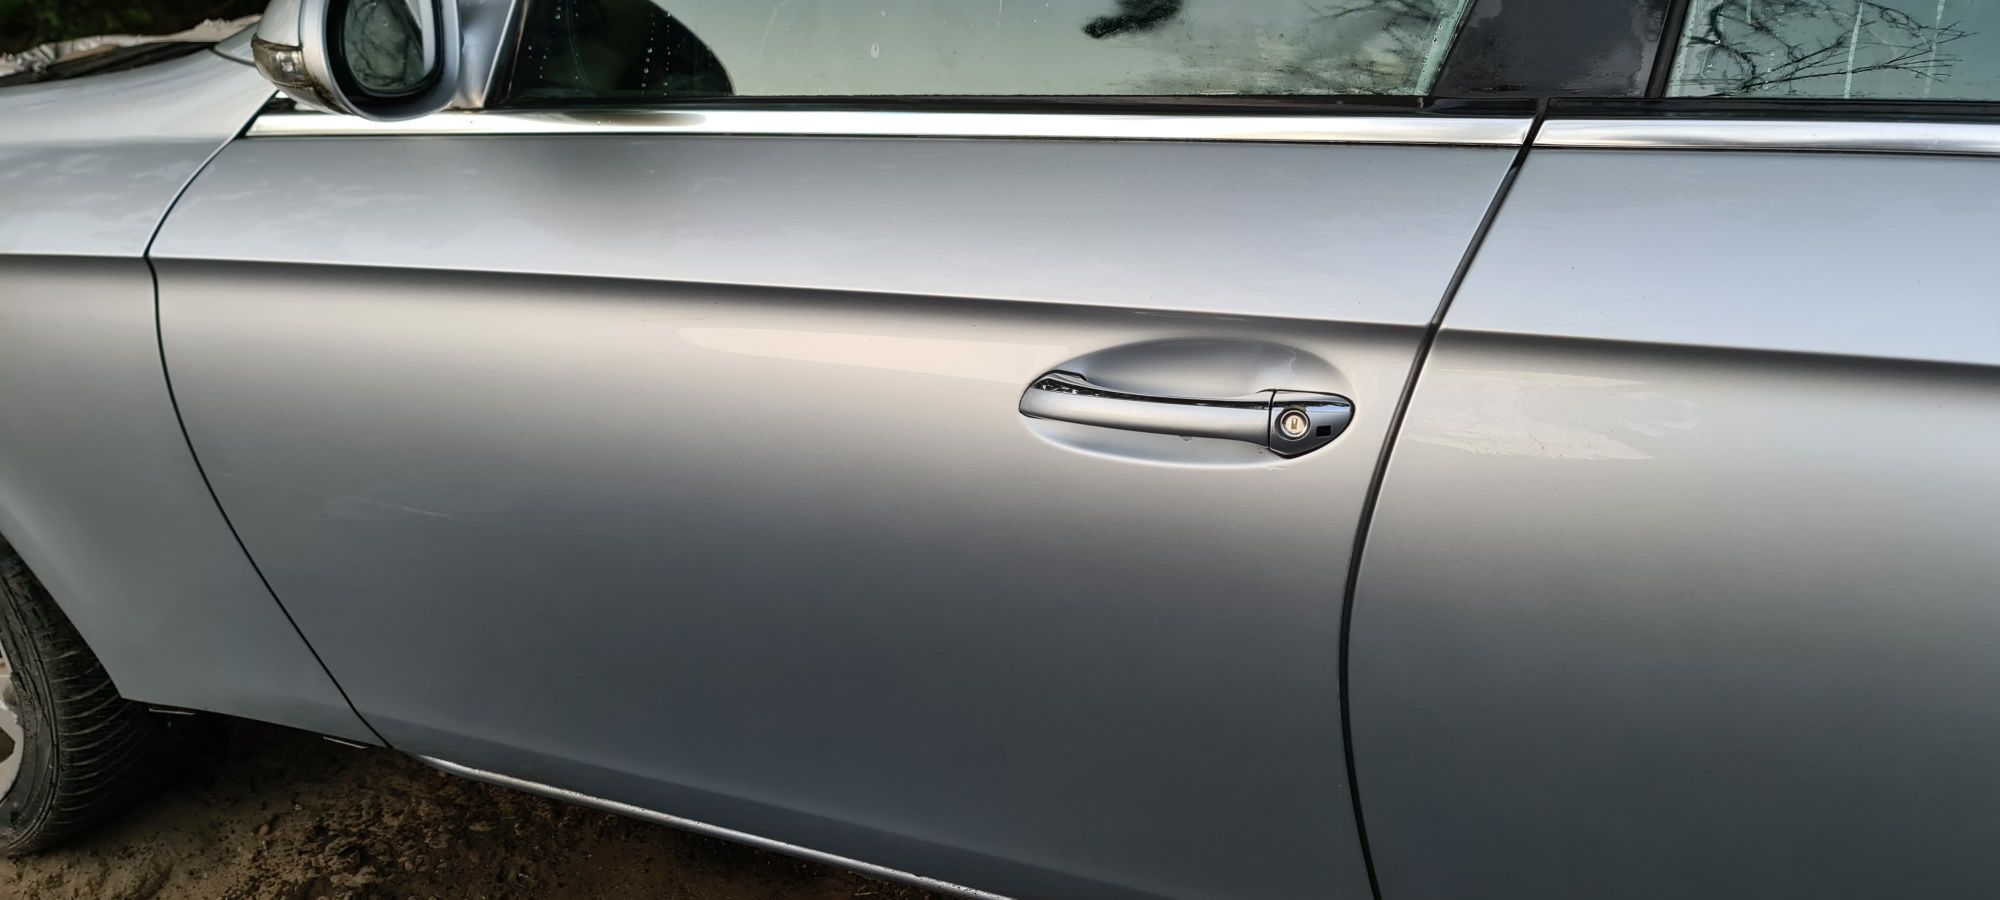 Drzwi Lewy Przód Lewe Przednie Mercedes CLS W219 Lack. 775